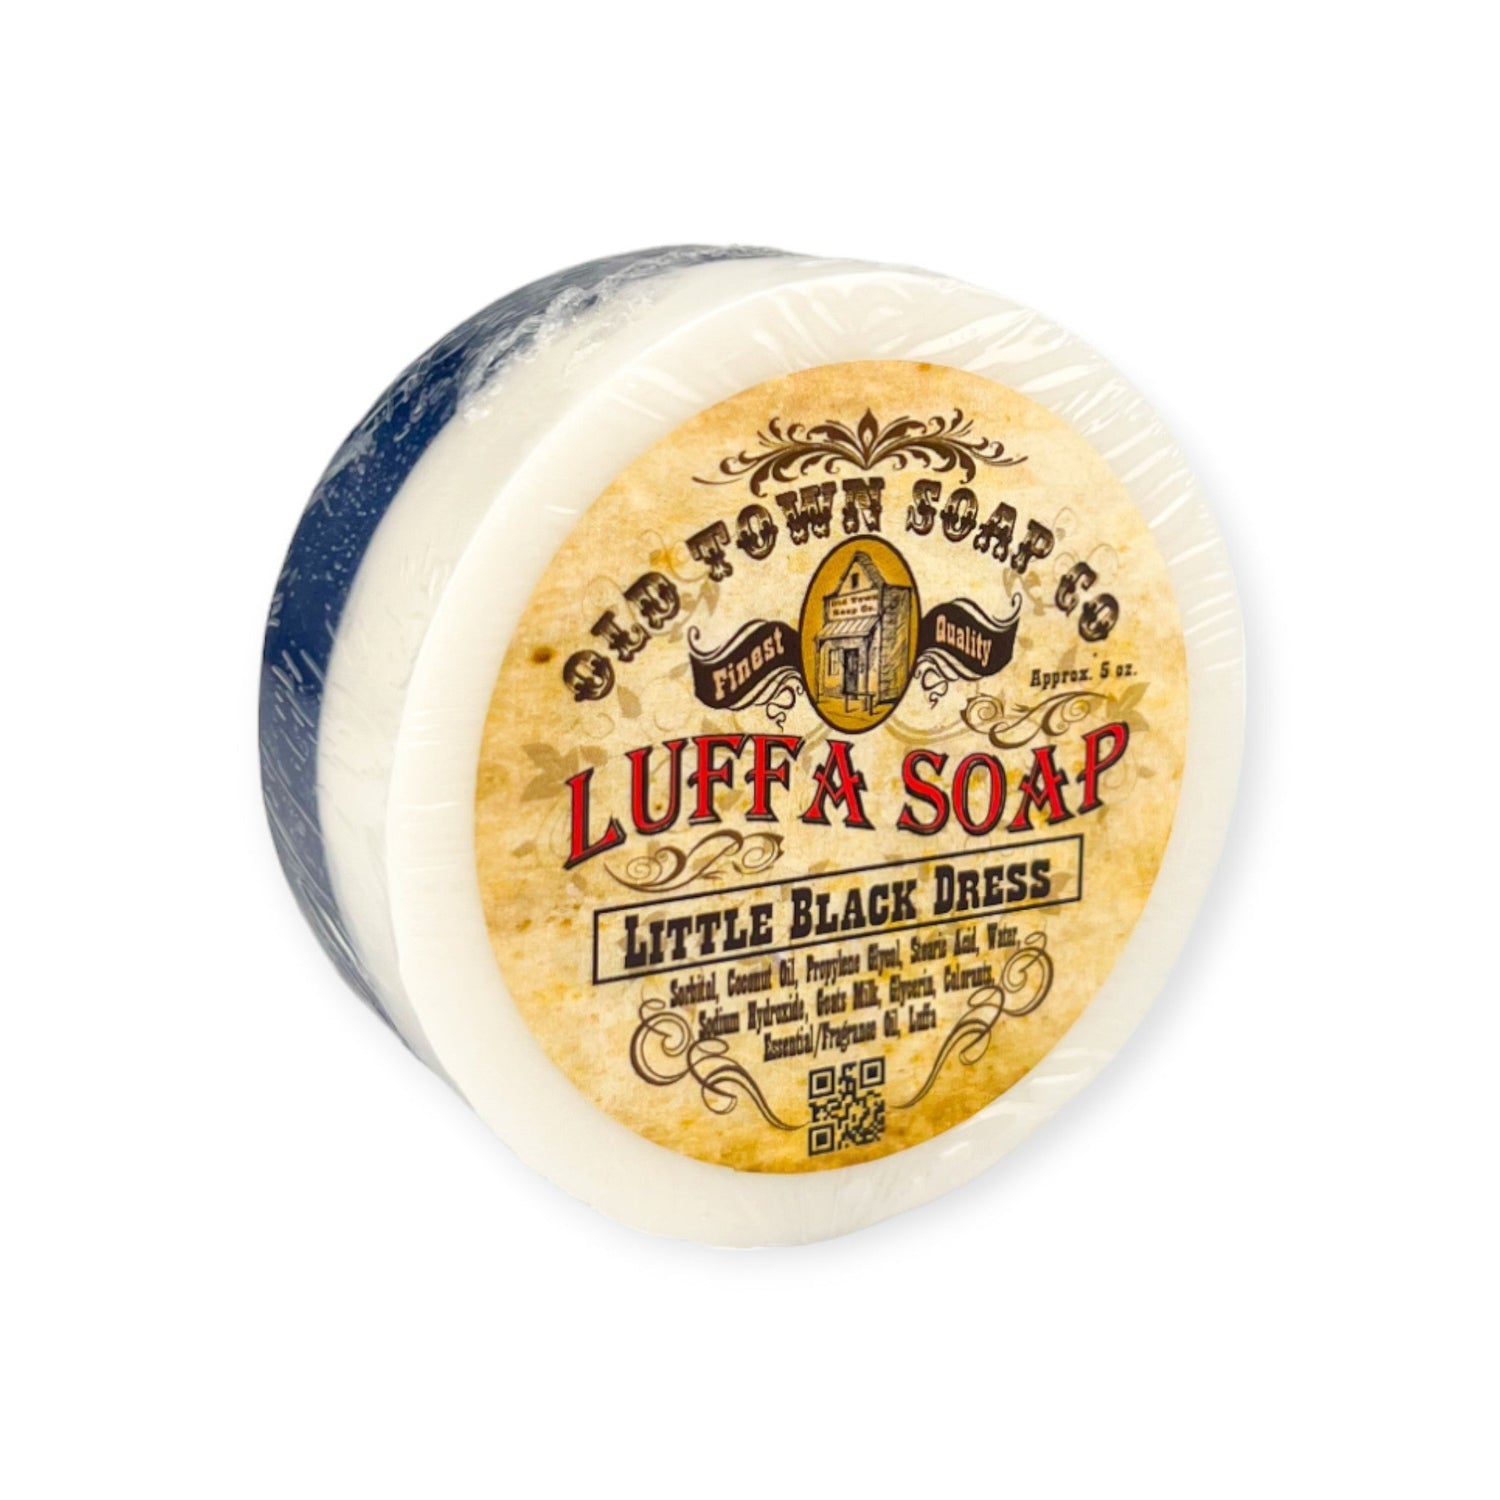 Little Black Dress -Luffa Soap - Old Town Soap Co.